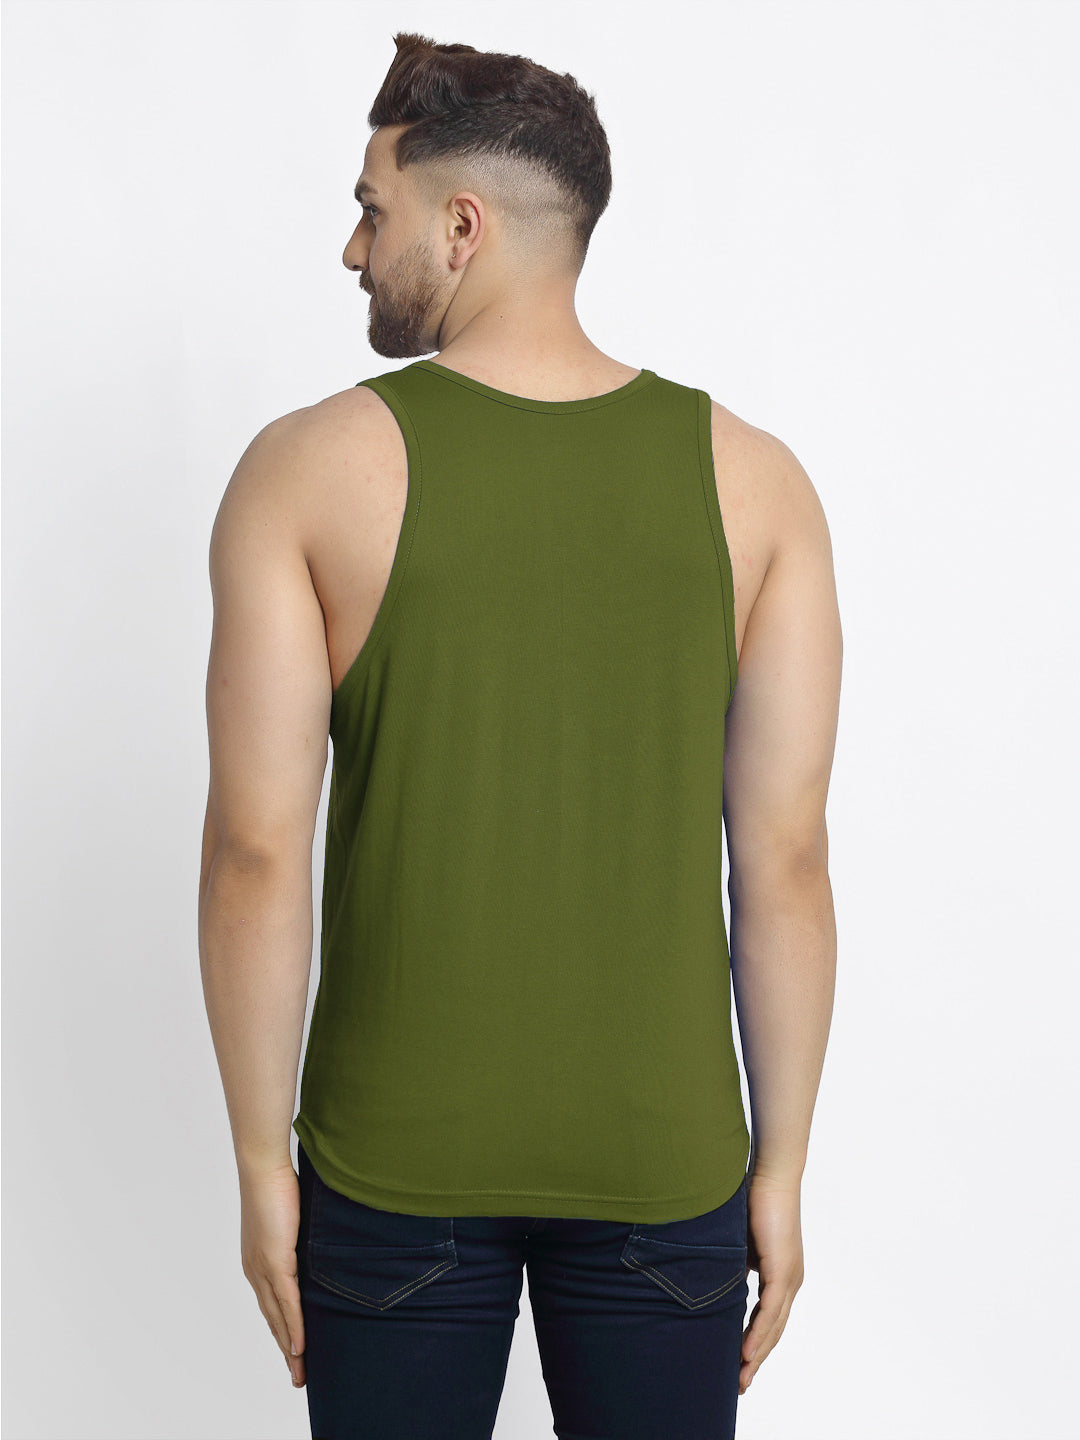 Men Hope Printed Innerwear Gym Vest - Friskers